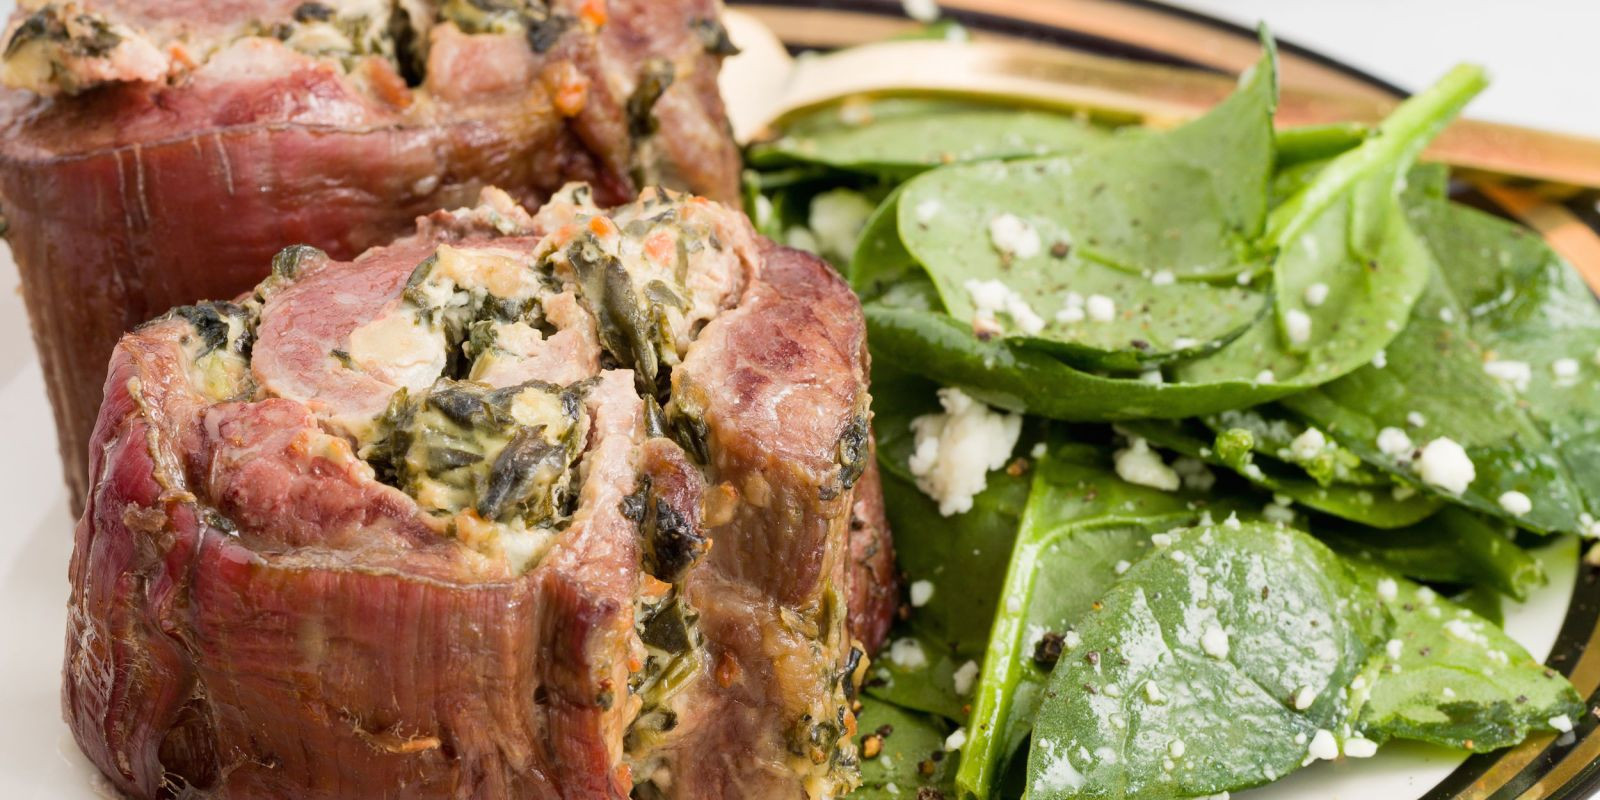 Steak Dinner Menu Ideas
 Spinach and Artichoke Steak Roll Ups Recipe